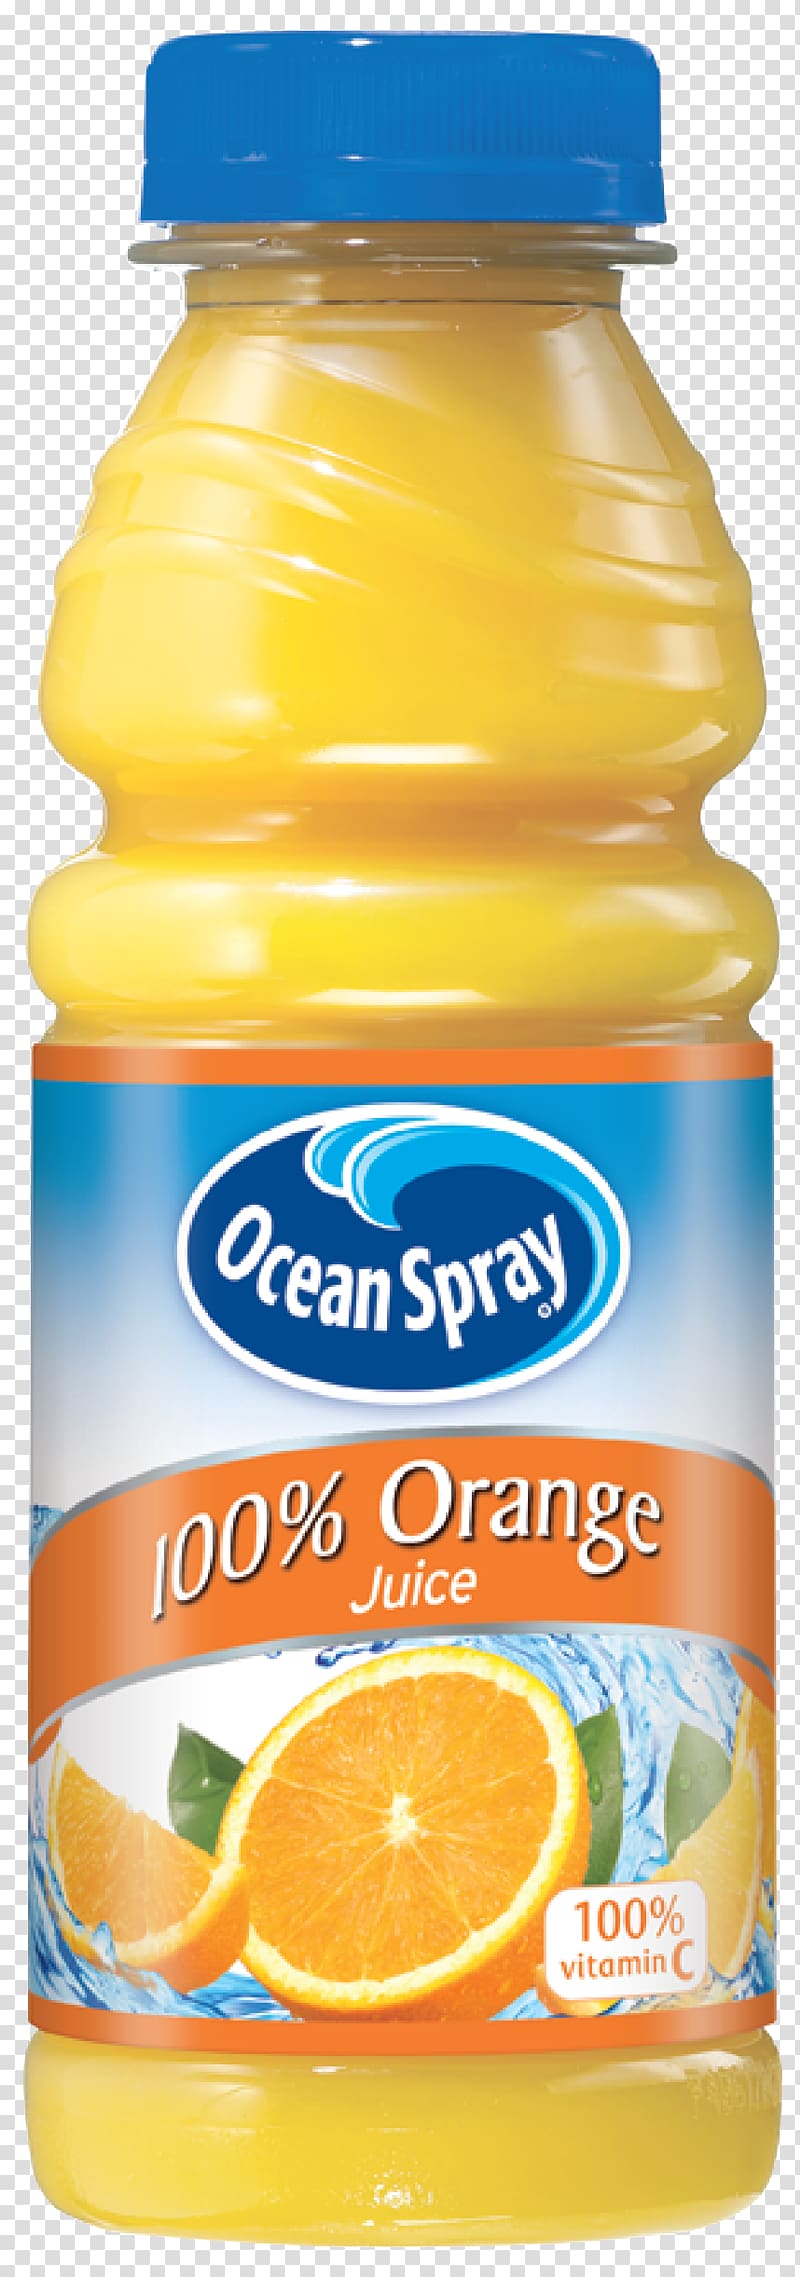 Orange juice Grapefruit juice Grape juice, juice orange transparent background PNG clipart